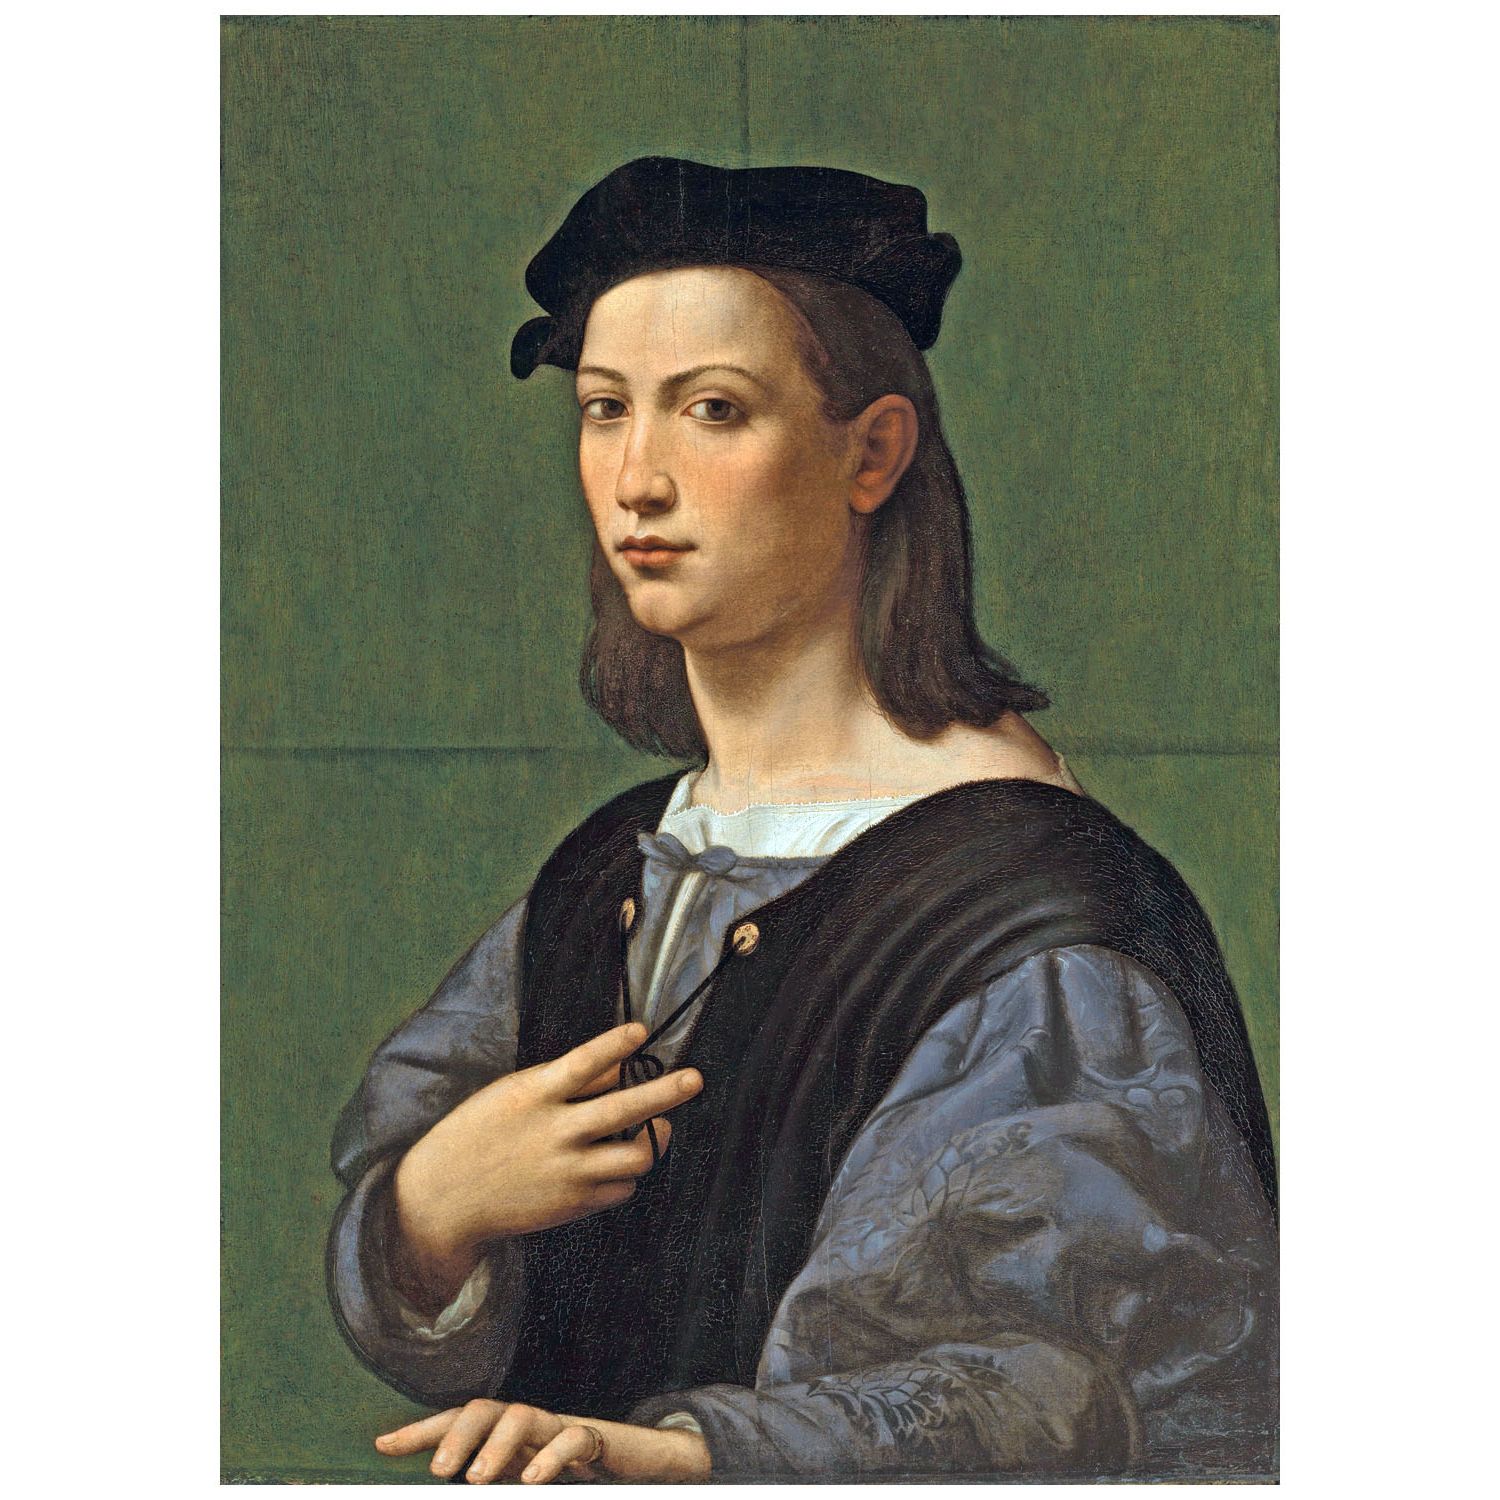 Giuliano Bugiardini. Ritratto di un giovane uomo. 1520. Private collection